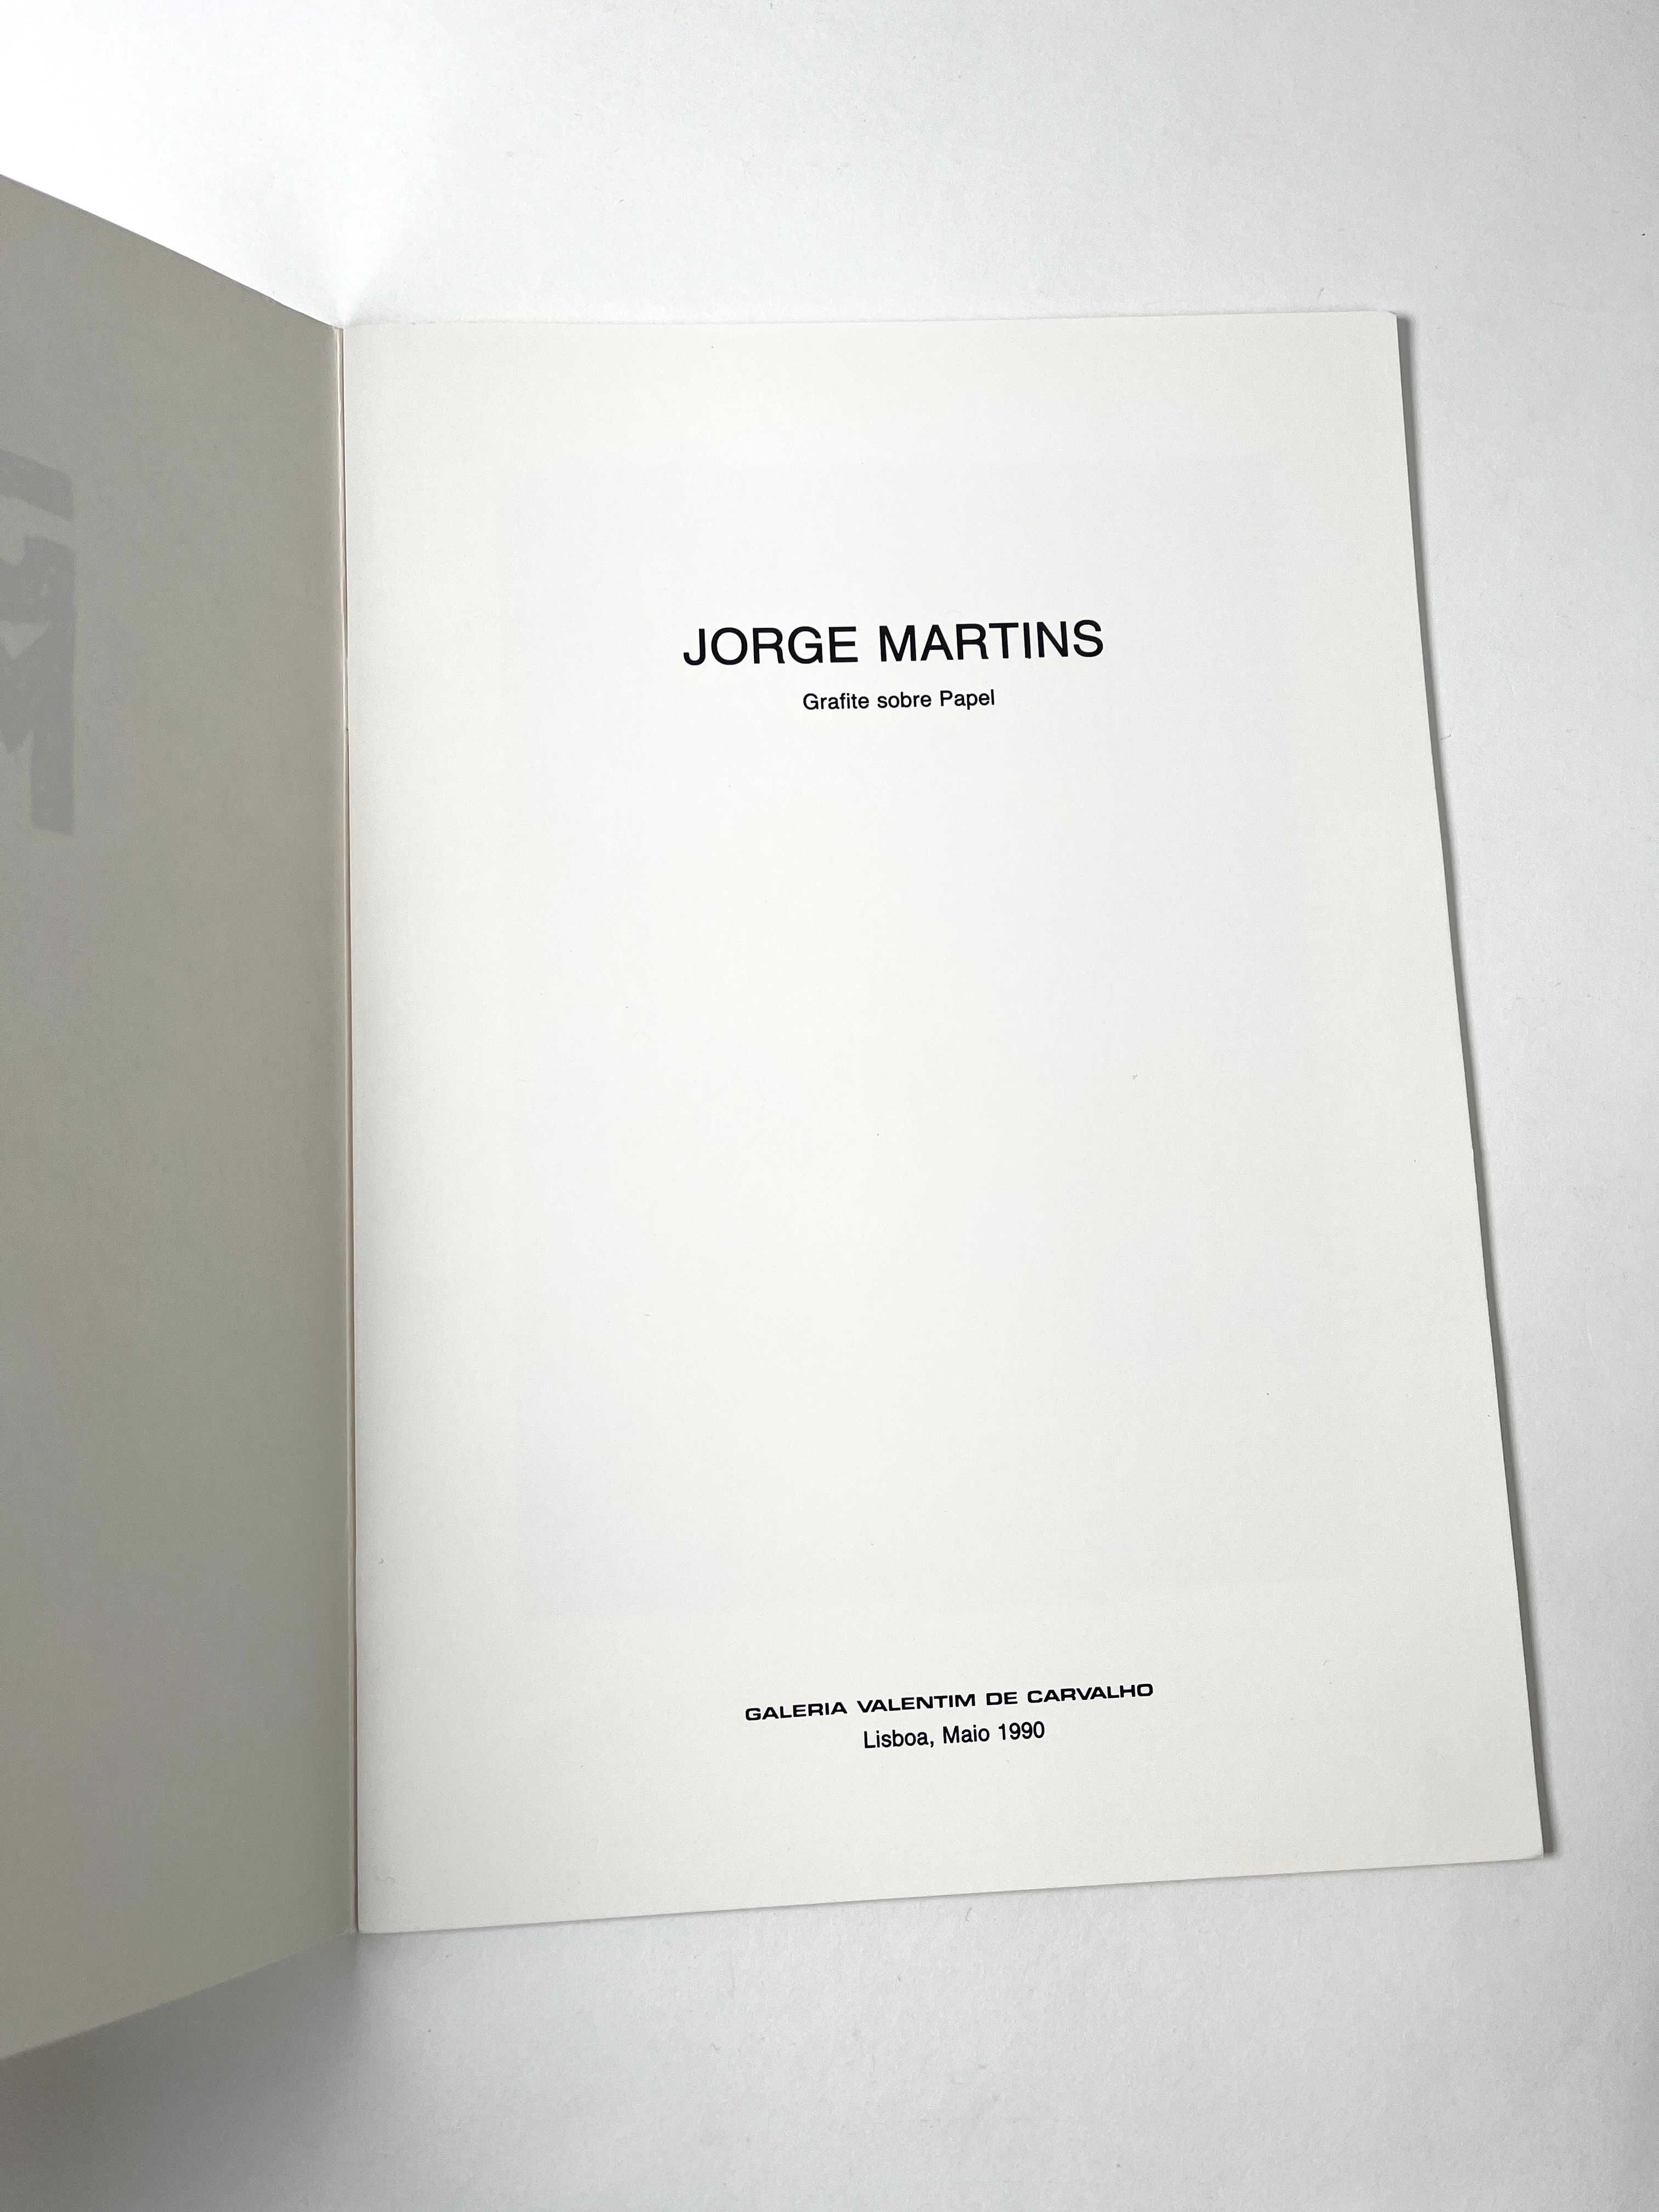 Jorge Martins Galeria Valentim de Carvalho 1990